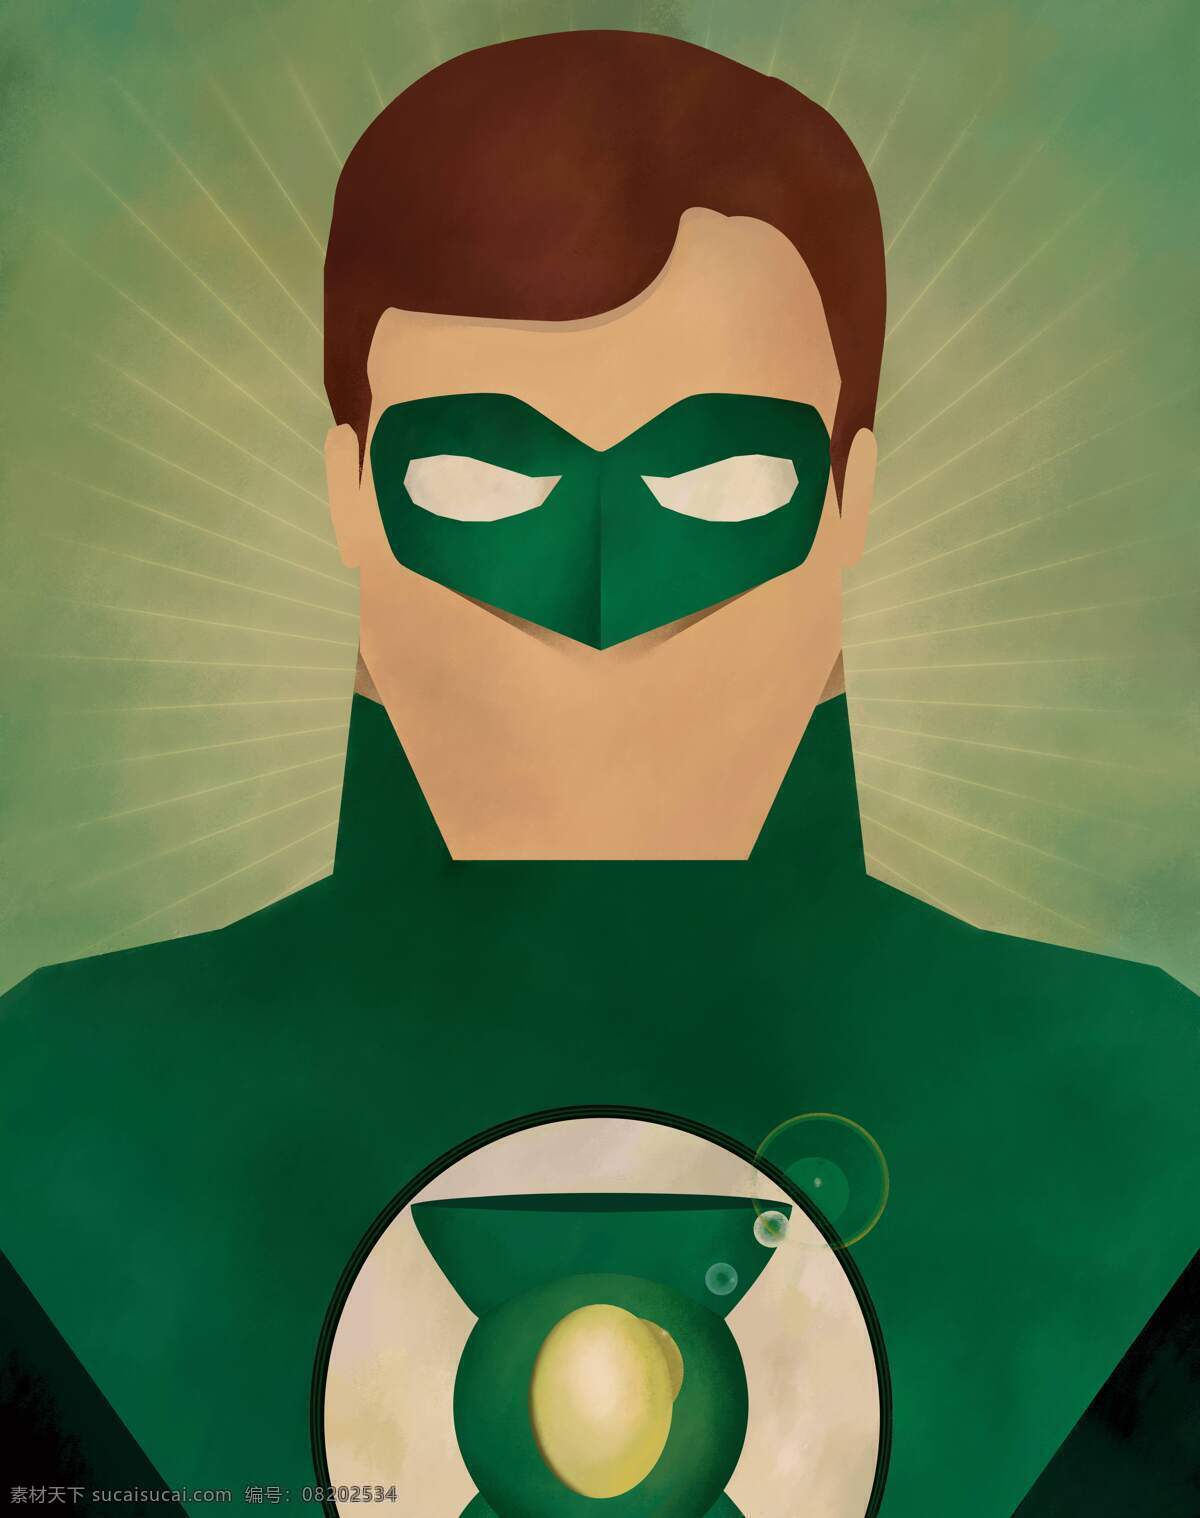 复仇者联盟 卡通 超人 绿巨人 美国队长 雷神 浩克 黑寡妇 矢量 立牌 派对 动漫 漫威 动漫动画 动漫人物